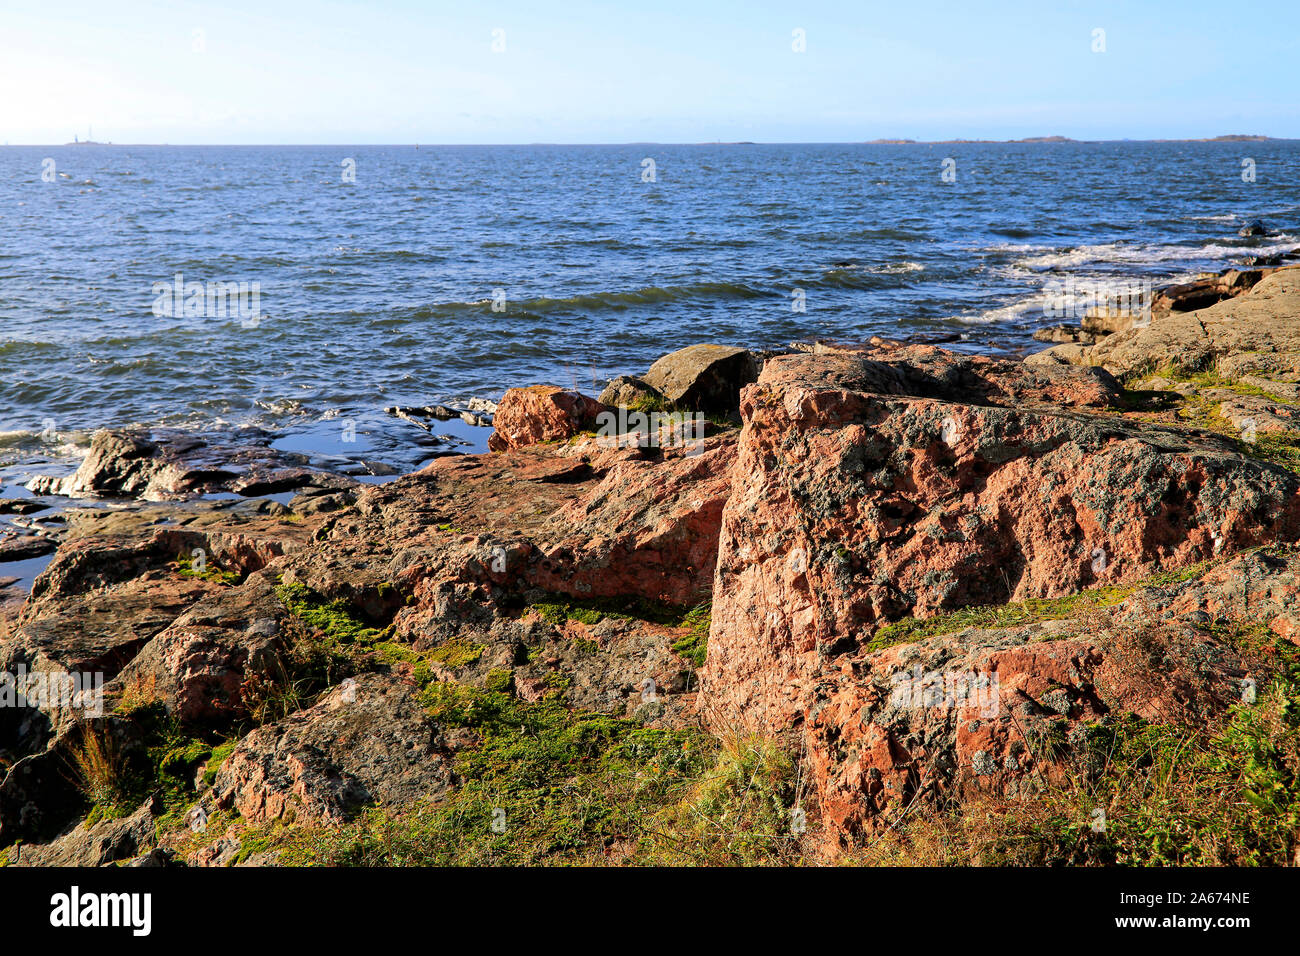 Las rocas junto al mar con vistas al mar azul de Kustaanmiekka, la isla más meridional del mar fortaleza Suomenlinna, Helsinki, Finlandia. De octubre de 2019. Foto de stock